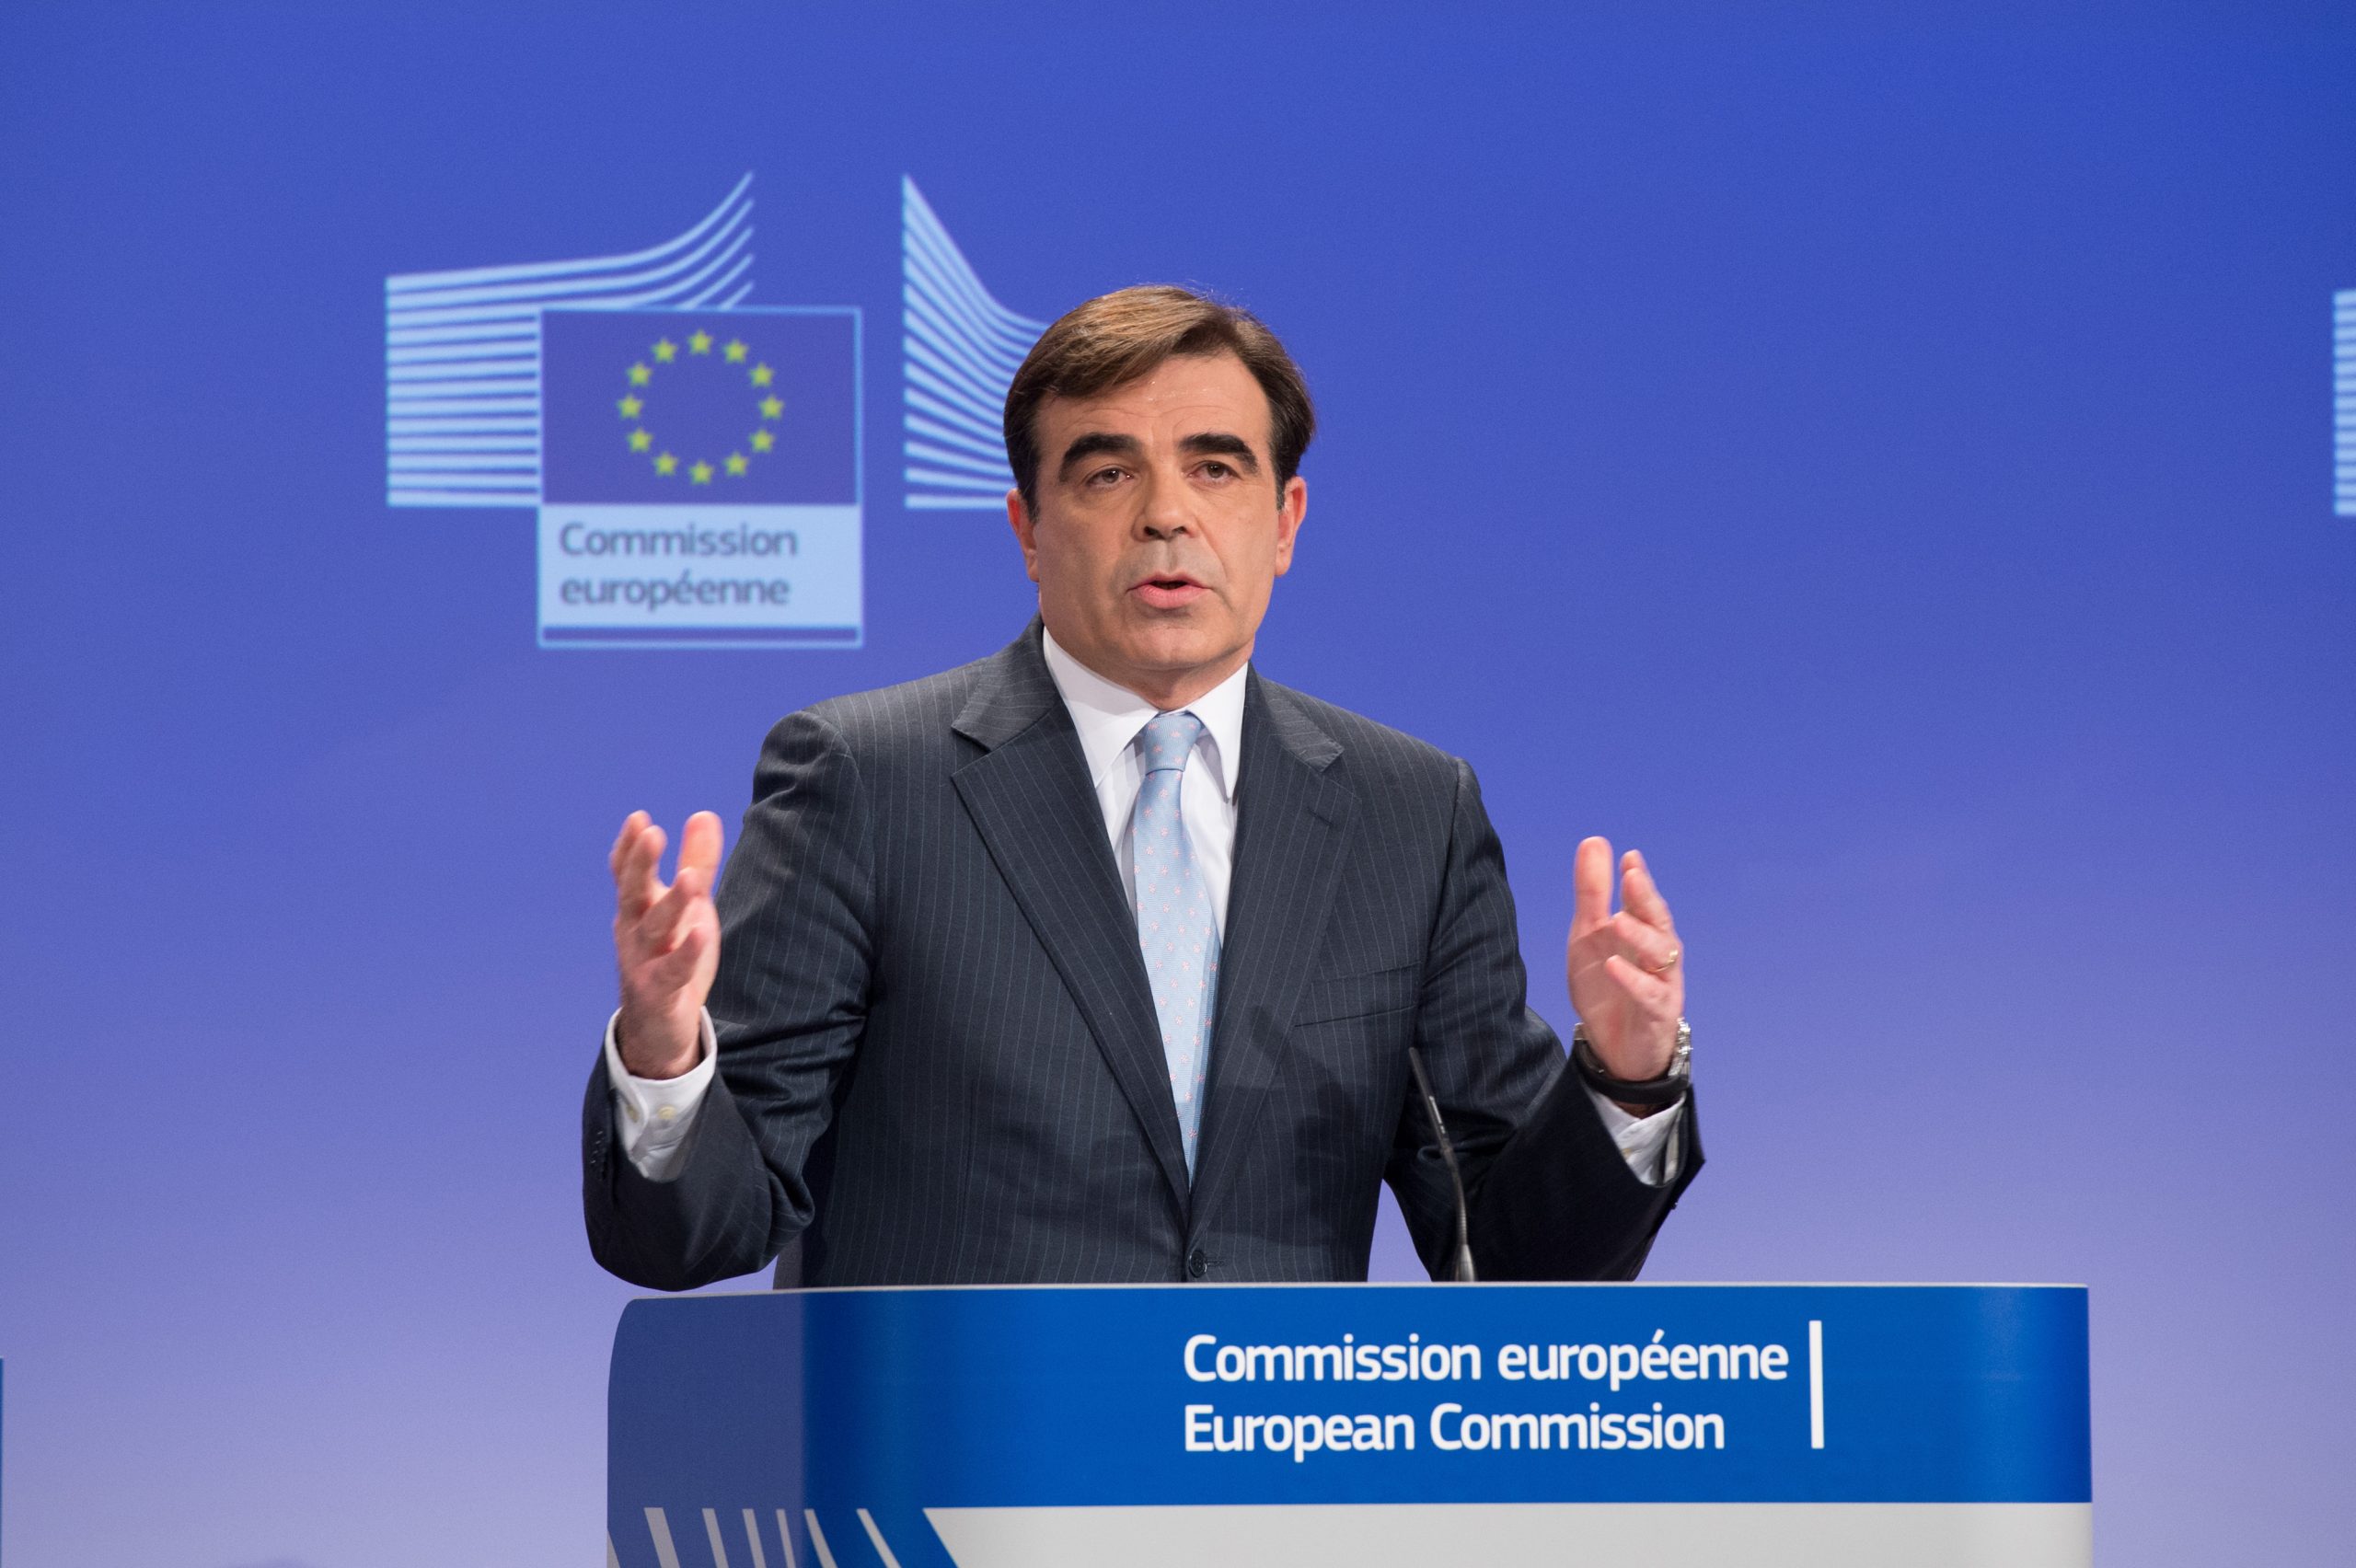 Μ.Σχοινάς: «Τα αποτελέσματα της Συνόδου Κορυφής θα είναι καλά και για την Ελλάδα και για την Ευρώπη»